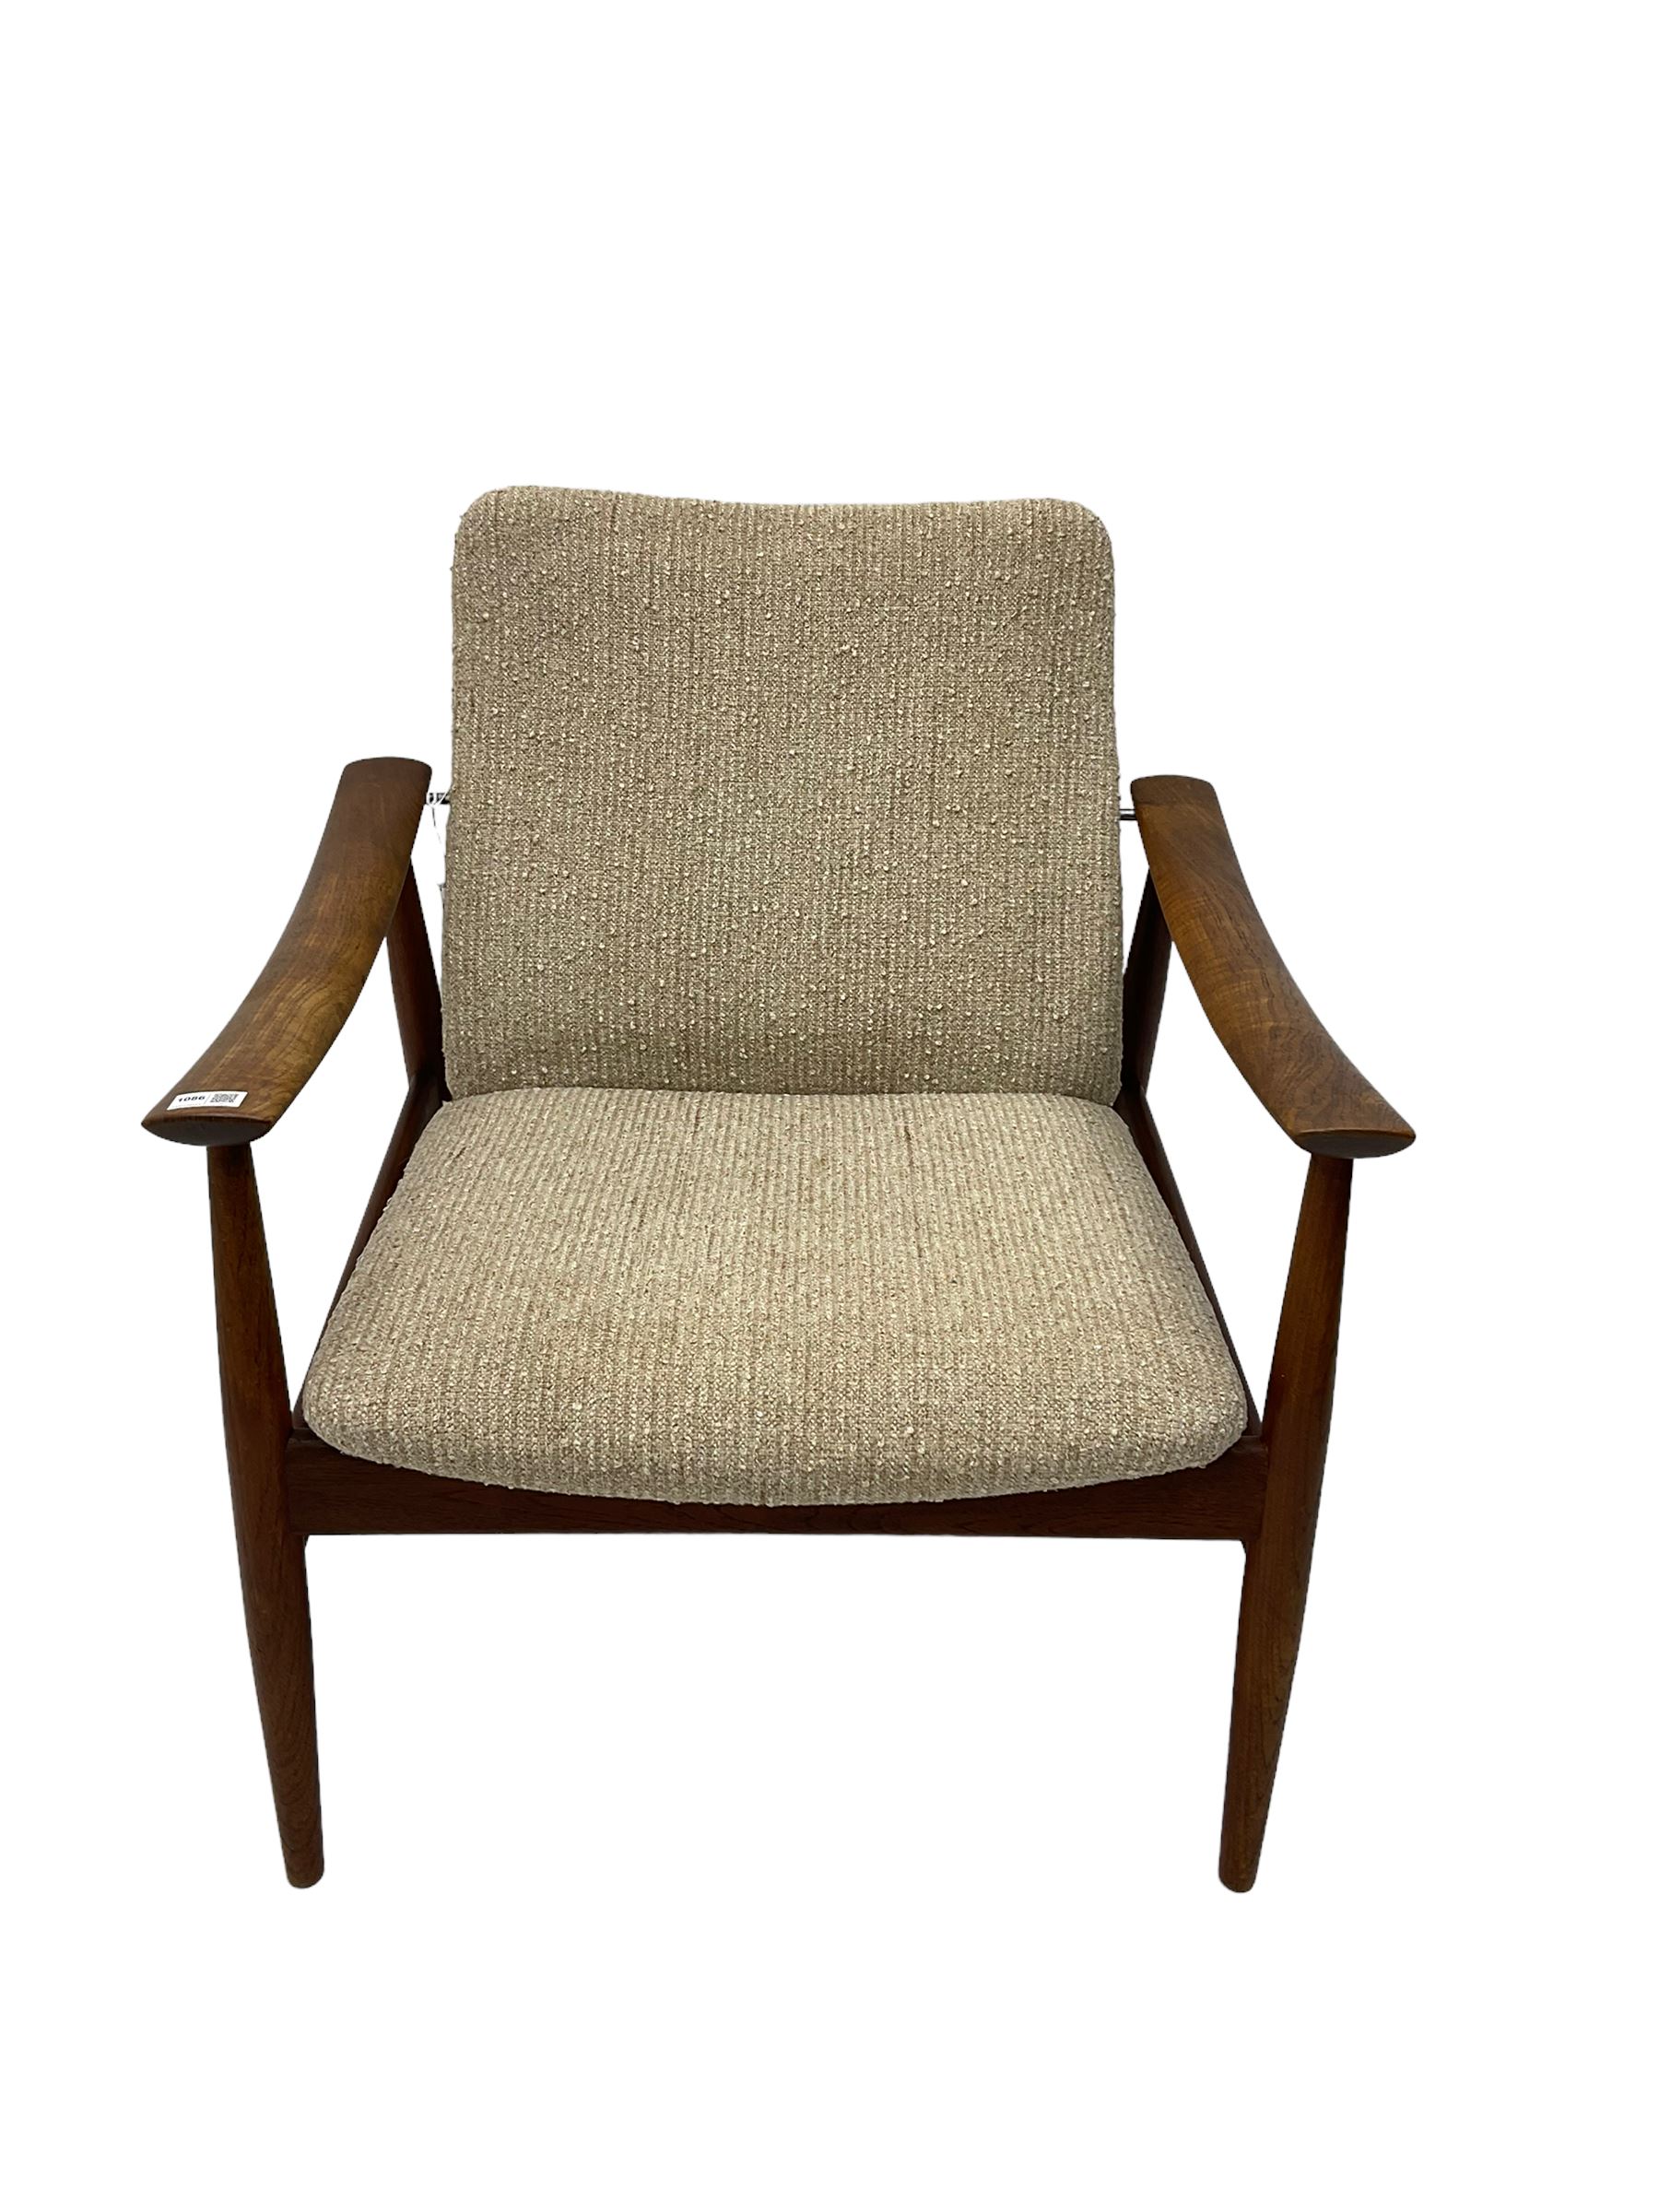 Finn Juhl for France & Son - 'model 138' mid-20th century teak easy chair upholstered in beige fabri - Image 11 of 14